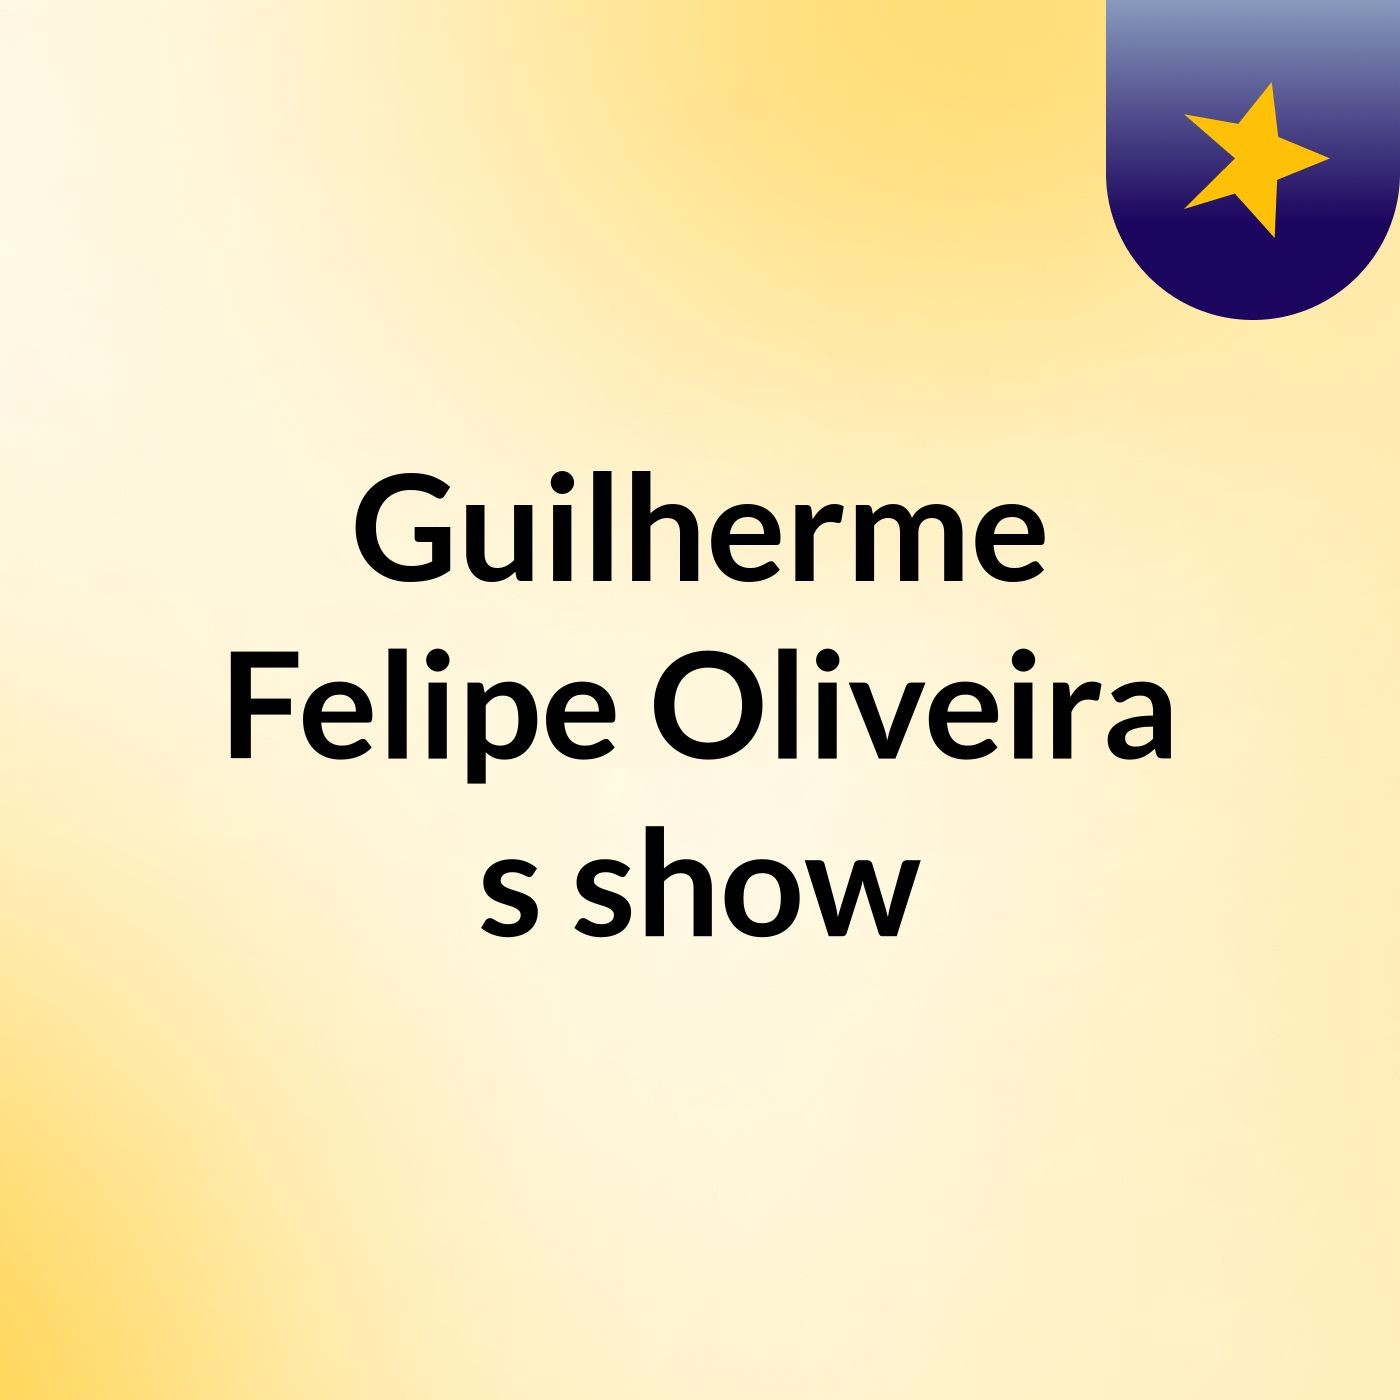 Guilherme Felipe Oliveira's show